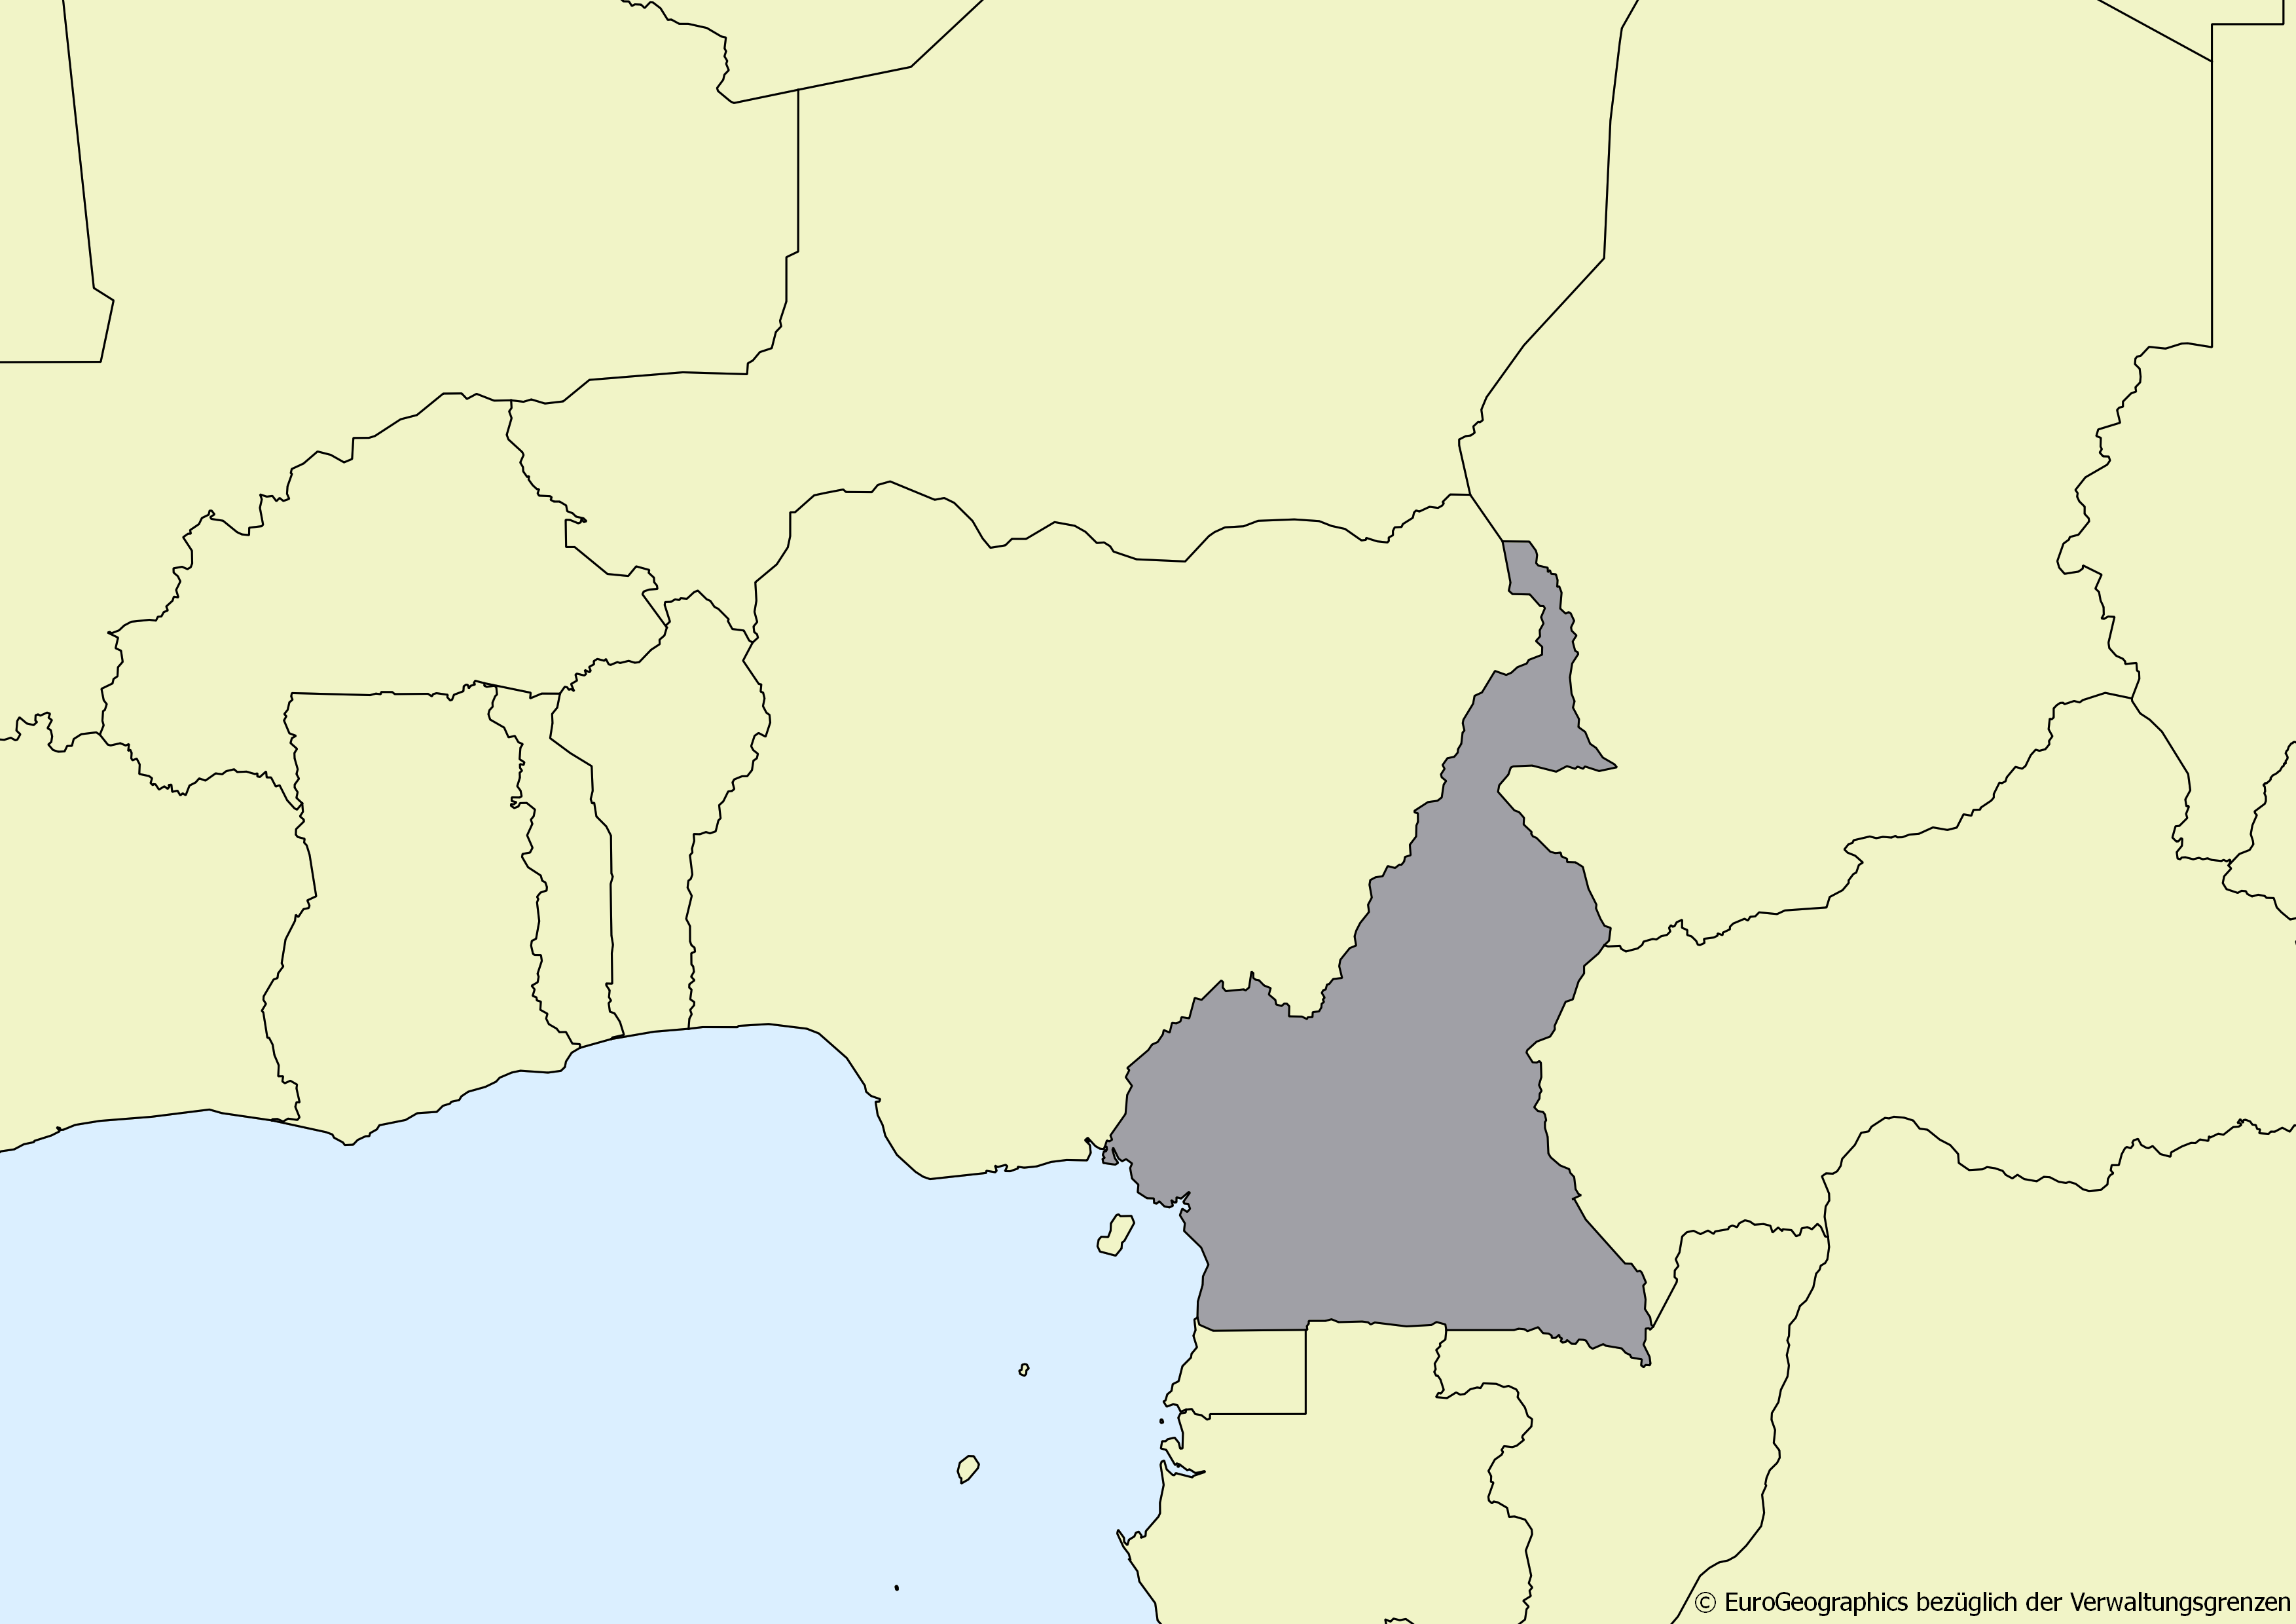 Ausschnitt einer Karte des afrikanischen Kontinents mit Ländergrenzen. Im Zentrum steht Kamerun grau hervorgehoben